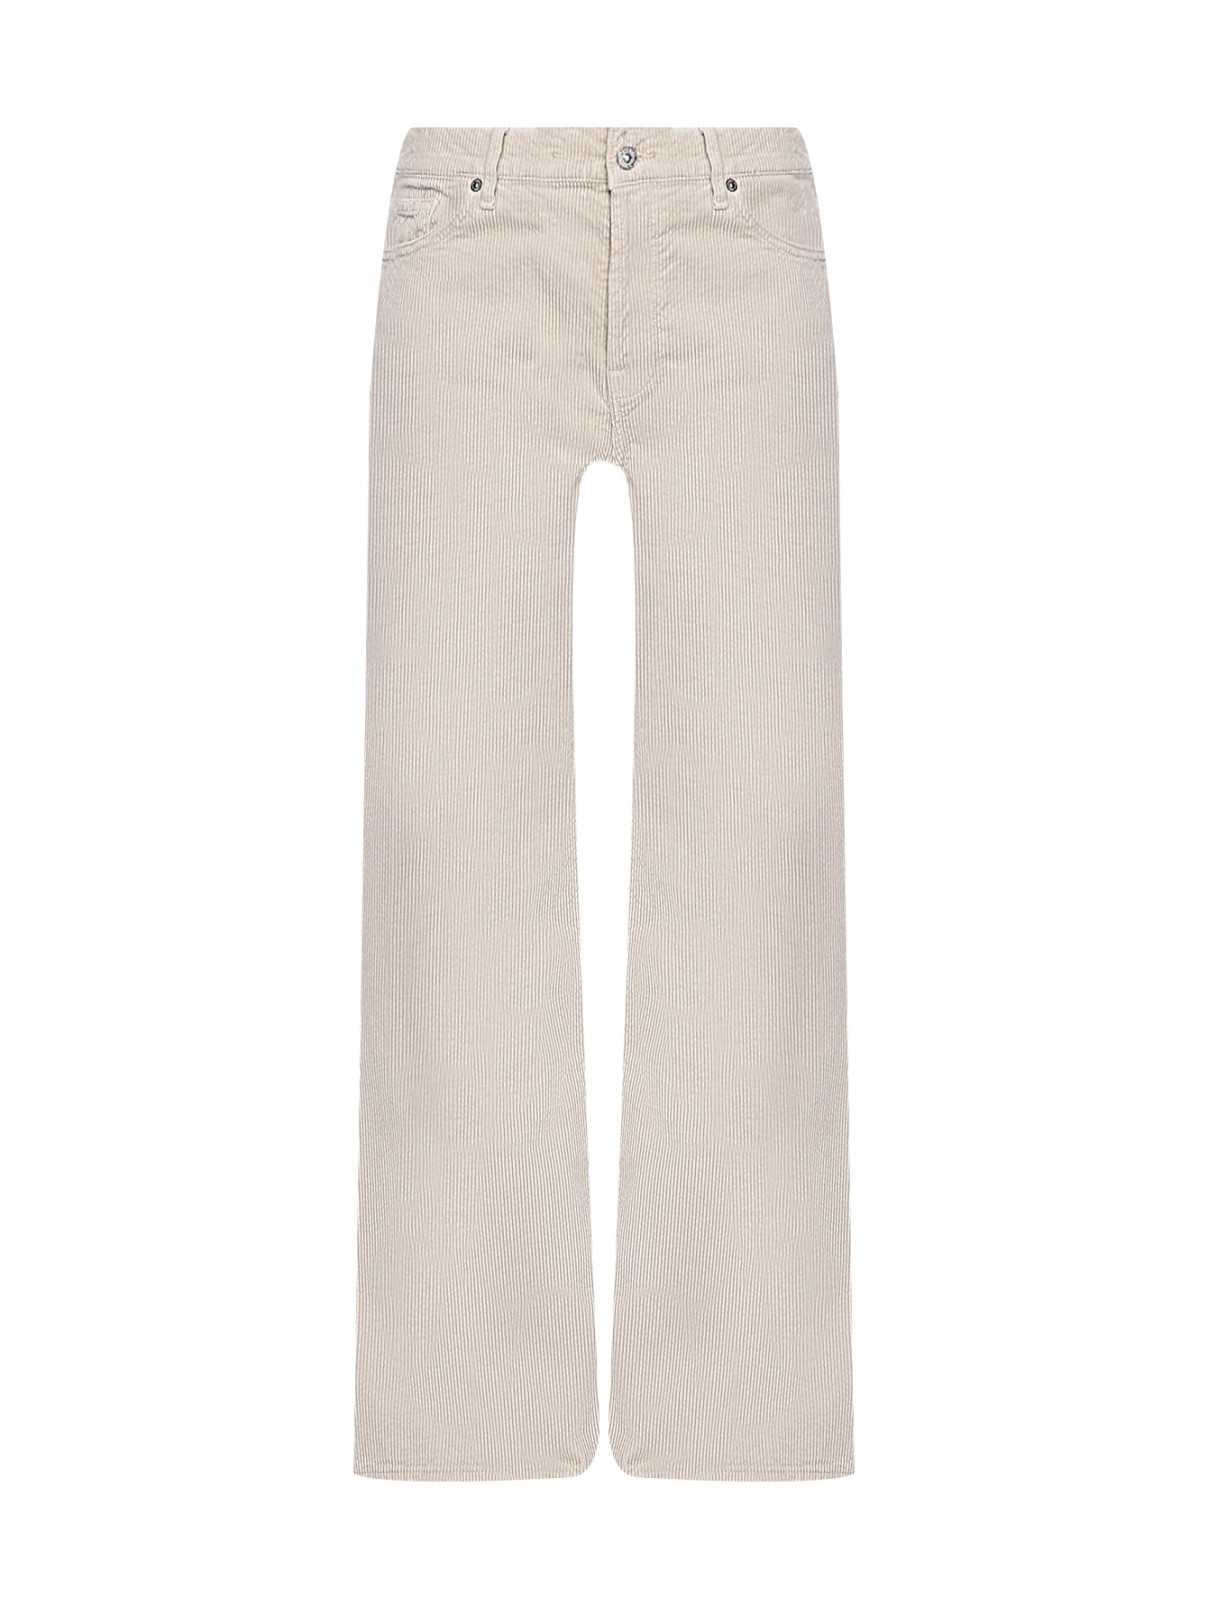 Вельветовые брюки с карманами 7 For All Mankind  –  Общий вид  – Цвет:  Бежевый